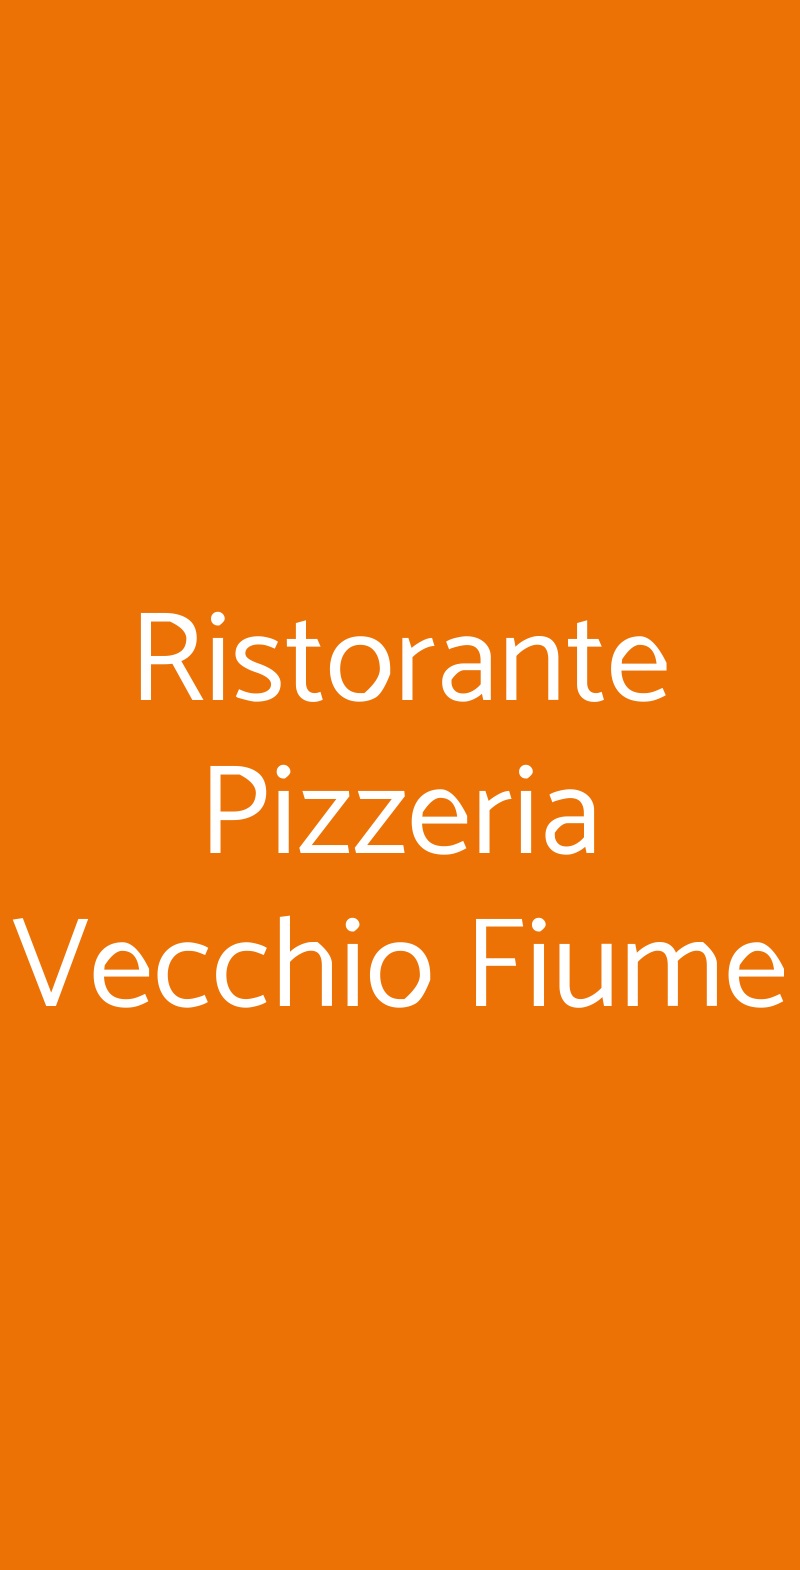 Ristorante Pizzeria Vecchio Fiume Bologna menù 1 pagina